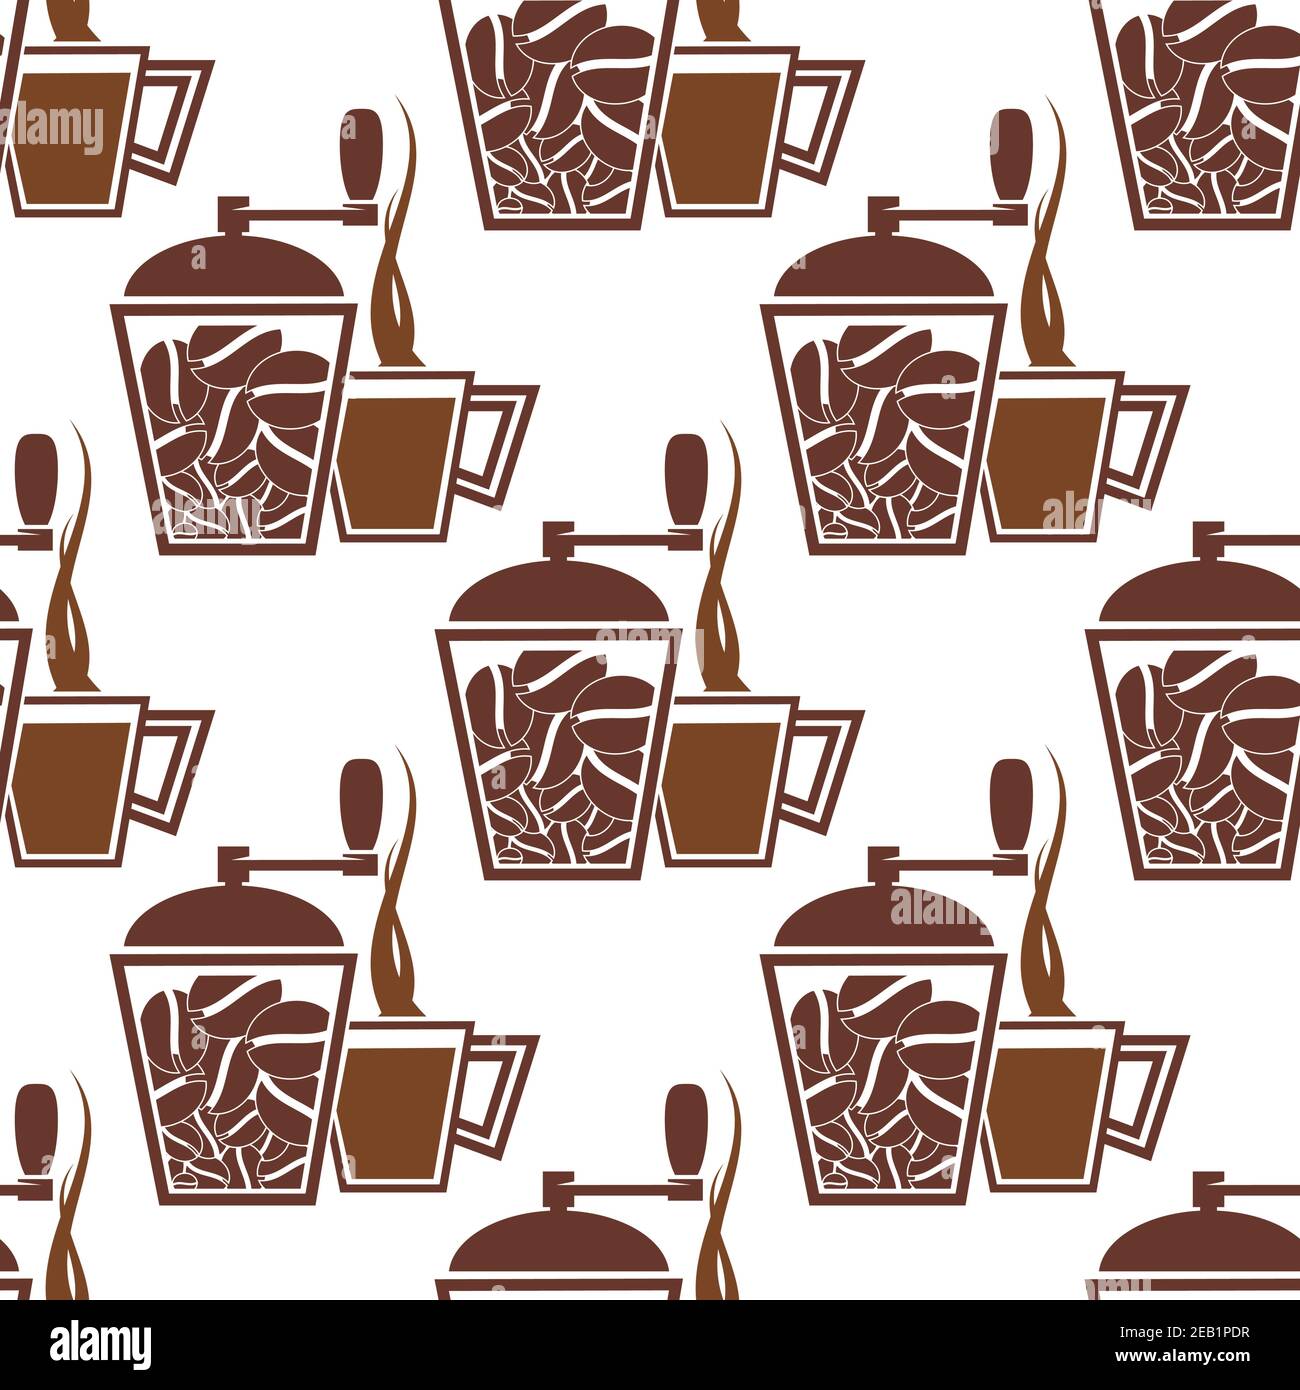 Kaffee nahtloses Muster mit Vintage manuelle Kaffeemühlen und Tassen Gefülltes braunes heißes Getränk auf weißem Hintergrund für Café oder Café-Design Stock Vektor